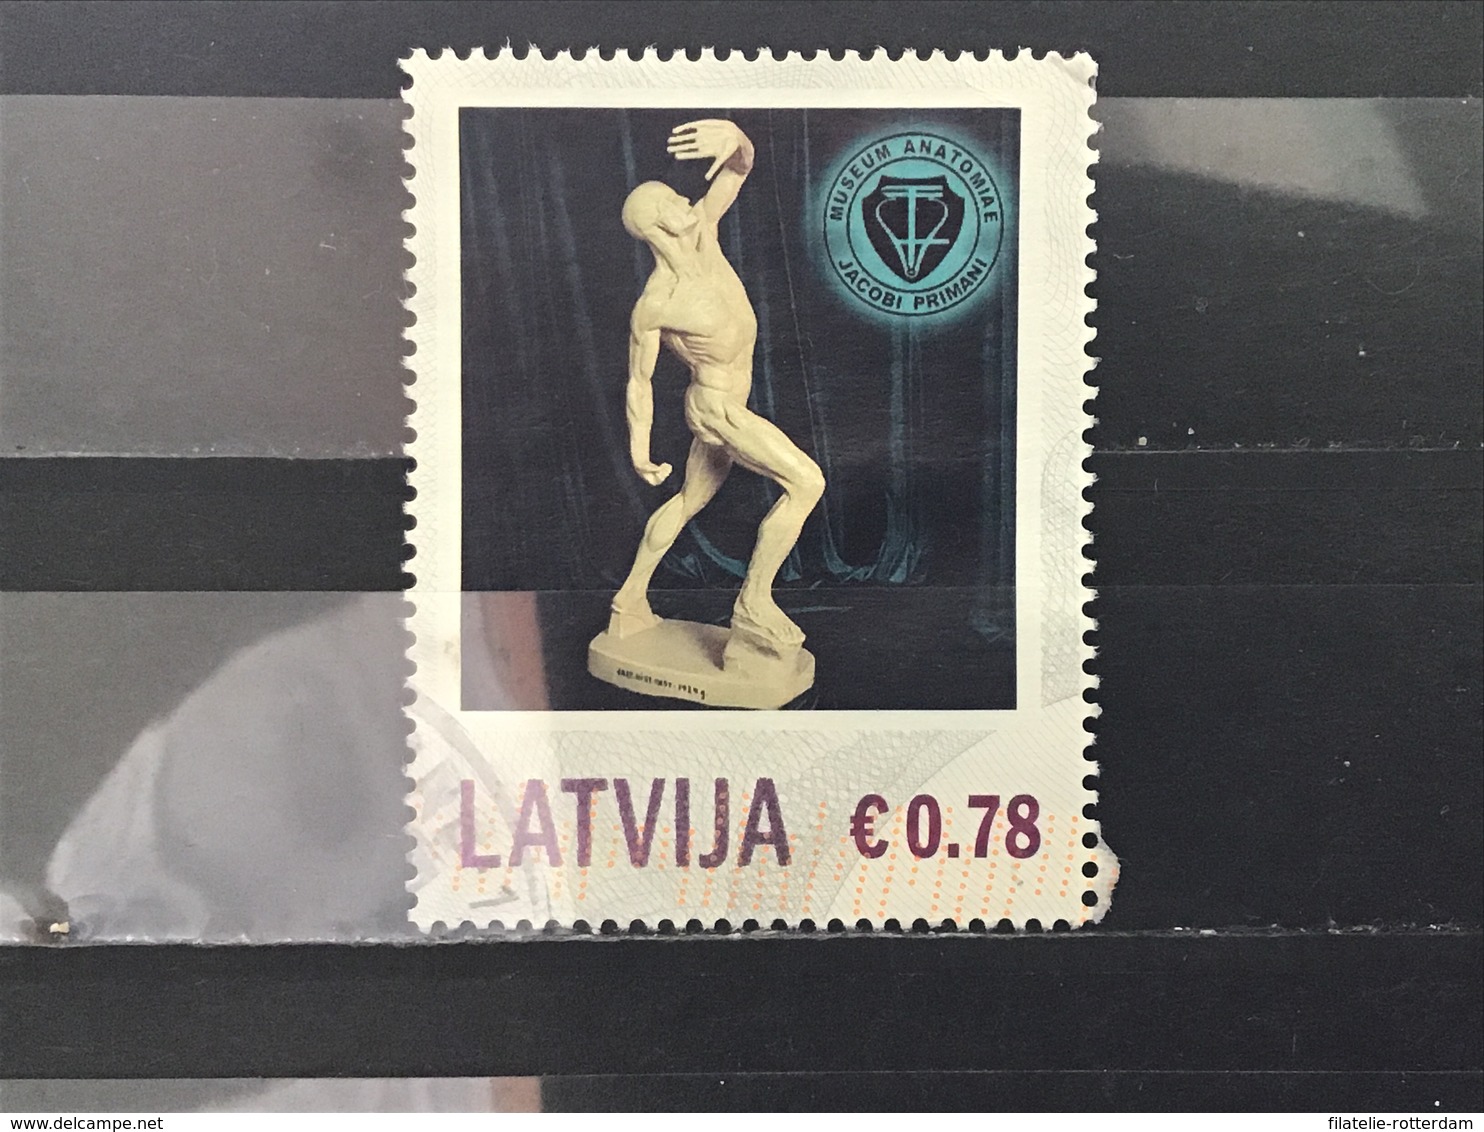 Letland / Latvia - Museum Van Anatomie (0.78) 2013 - Letland